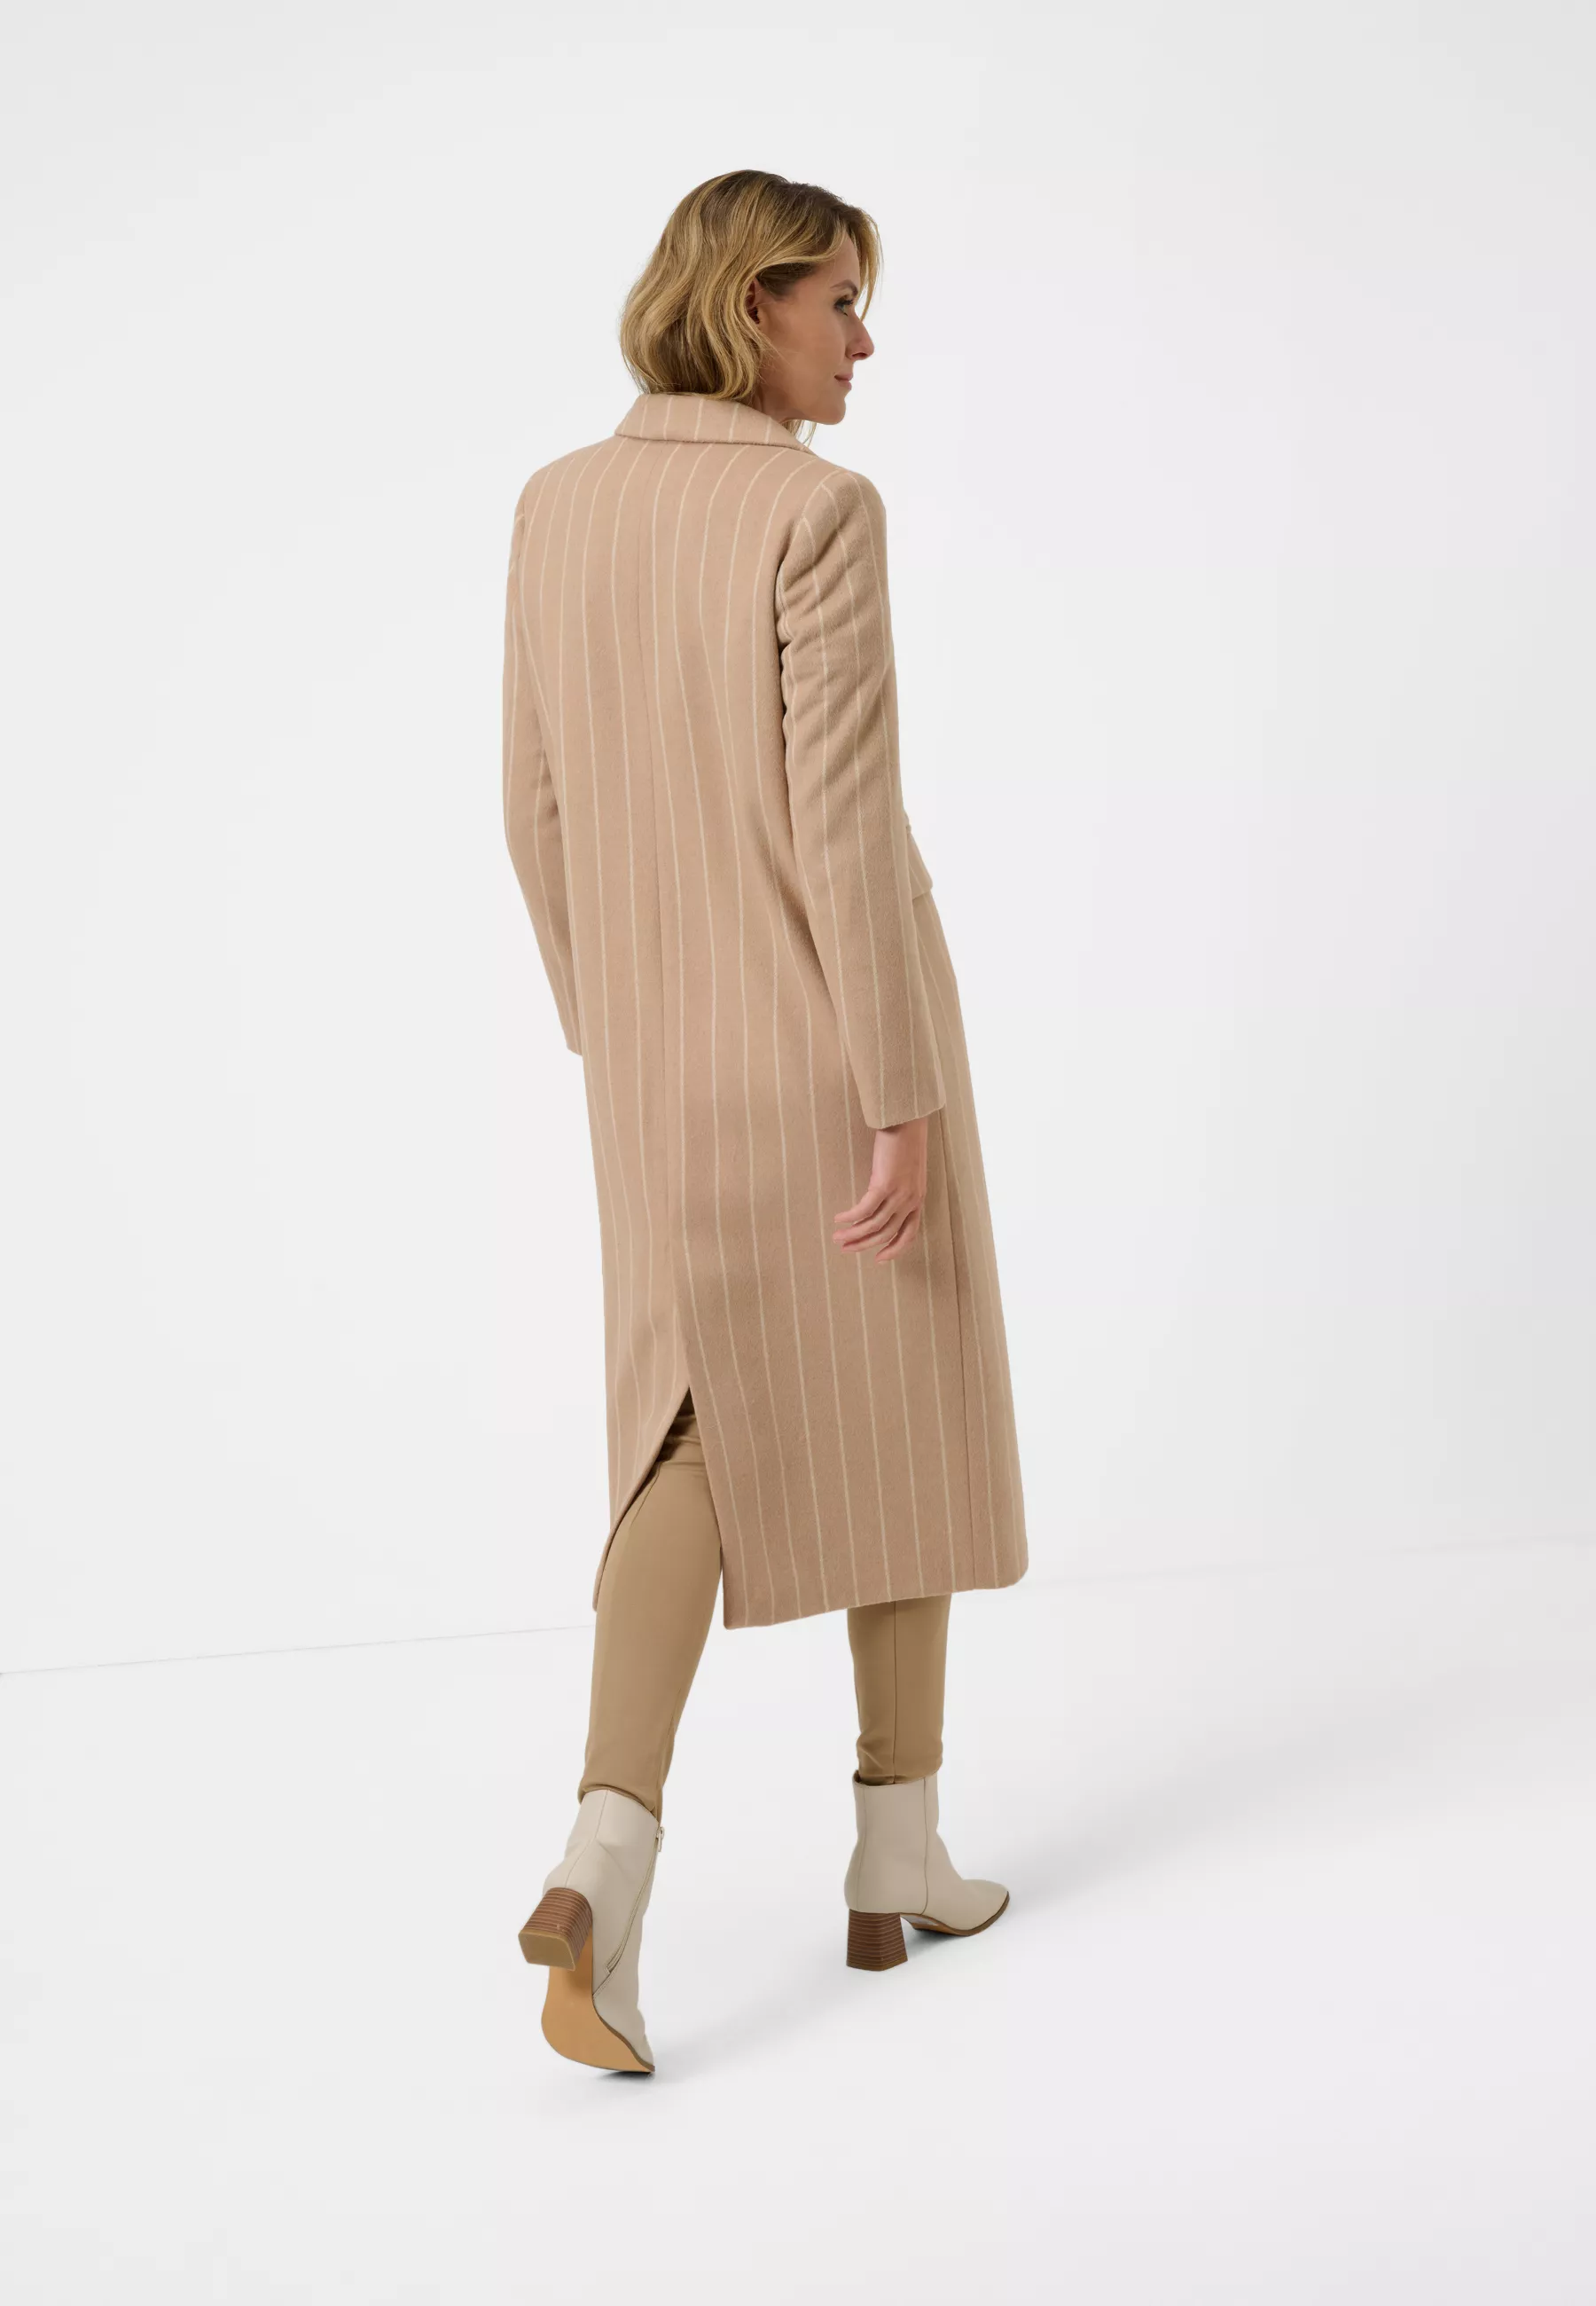 Damen Textil Mantel Valia in Beige Gestreift von Ricano, Rückansicht am Model